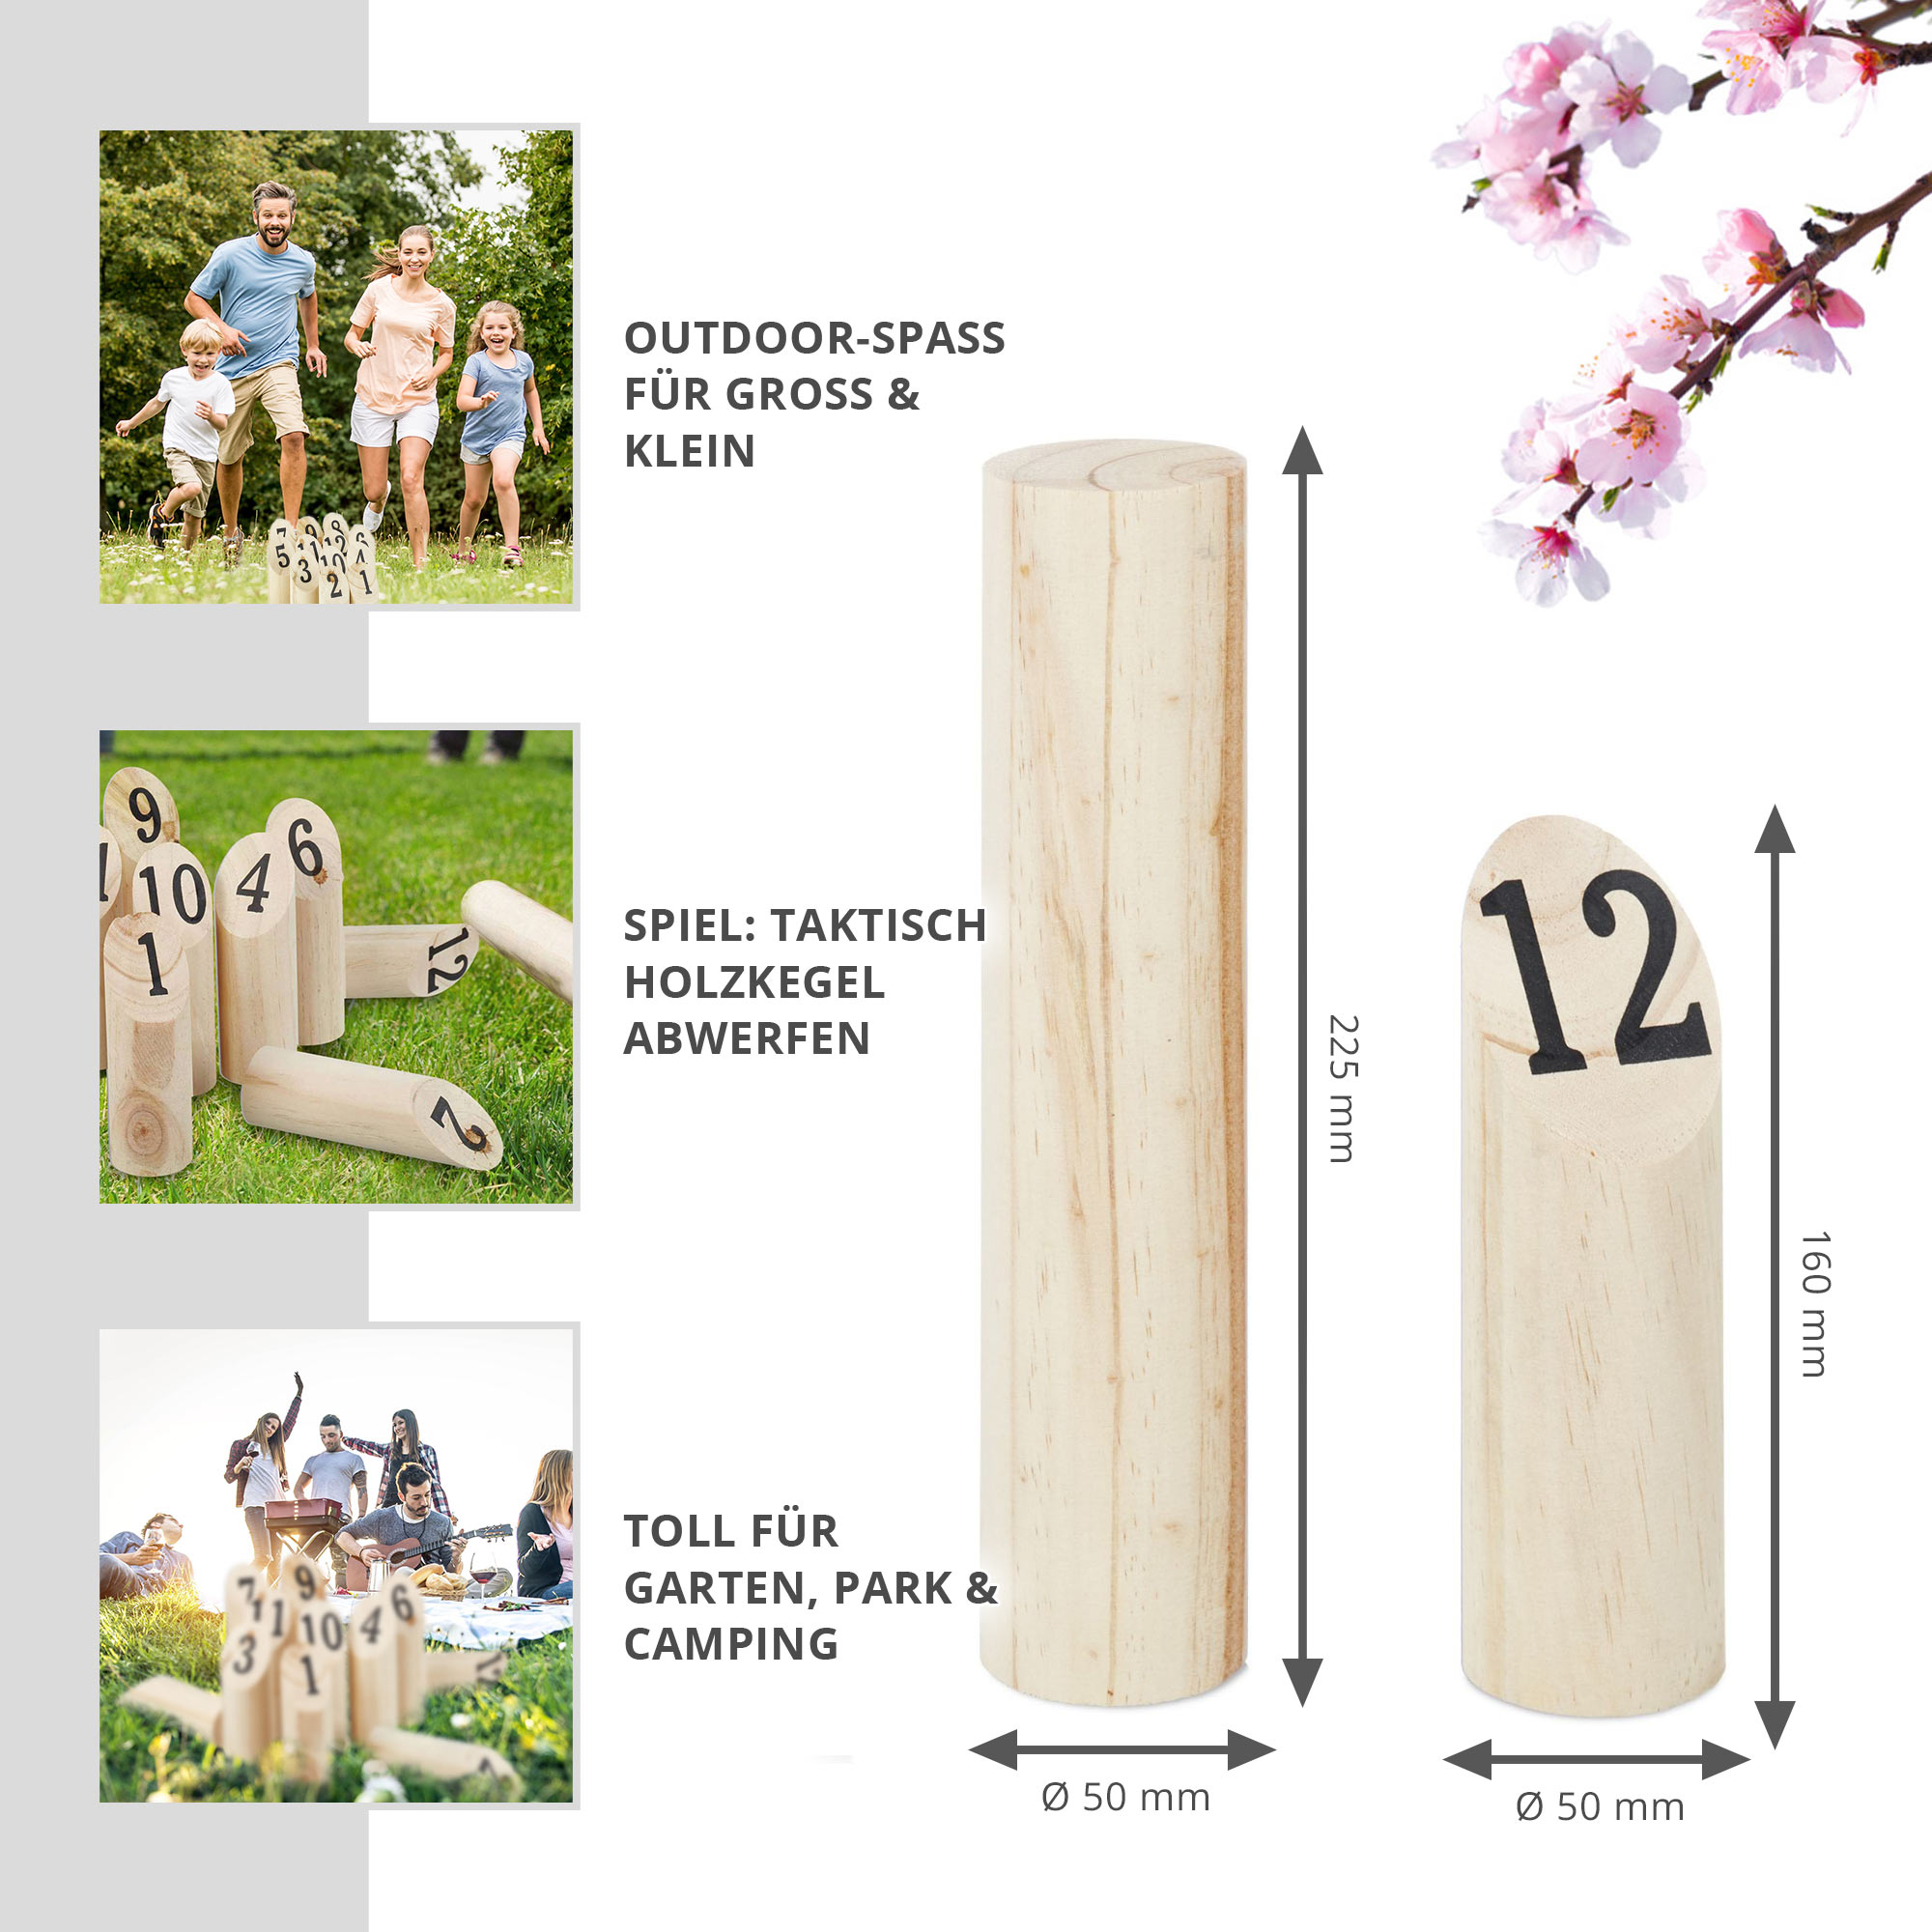 Finnland Spiel mit Zahlenkegeln und Wurfholz, Wikinger Holzspiel zum Zielwerfen, Finn Kubb Gartenspiel für die Familie, Finnisches Wurfspiel aus Holz